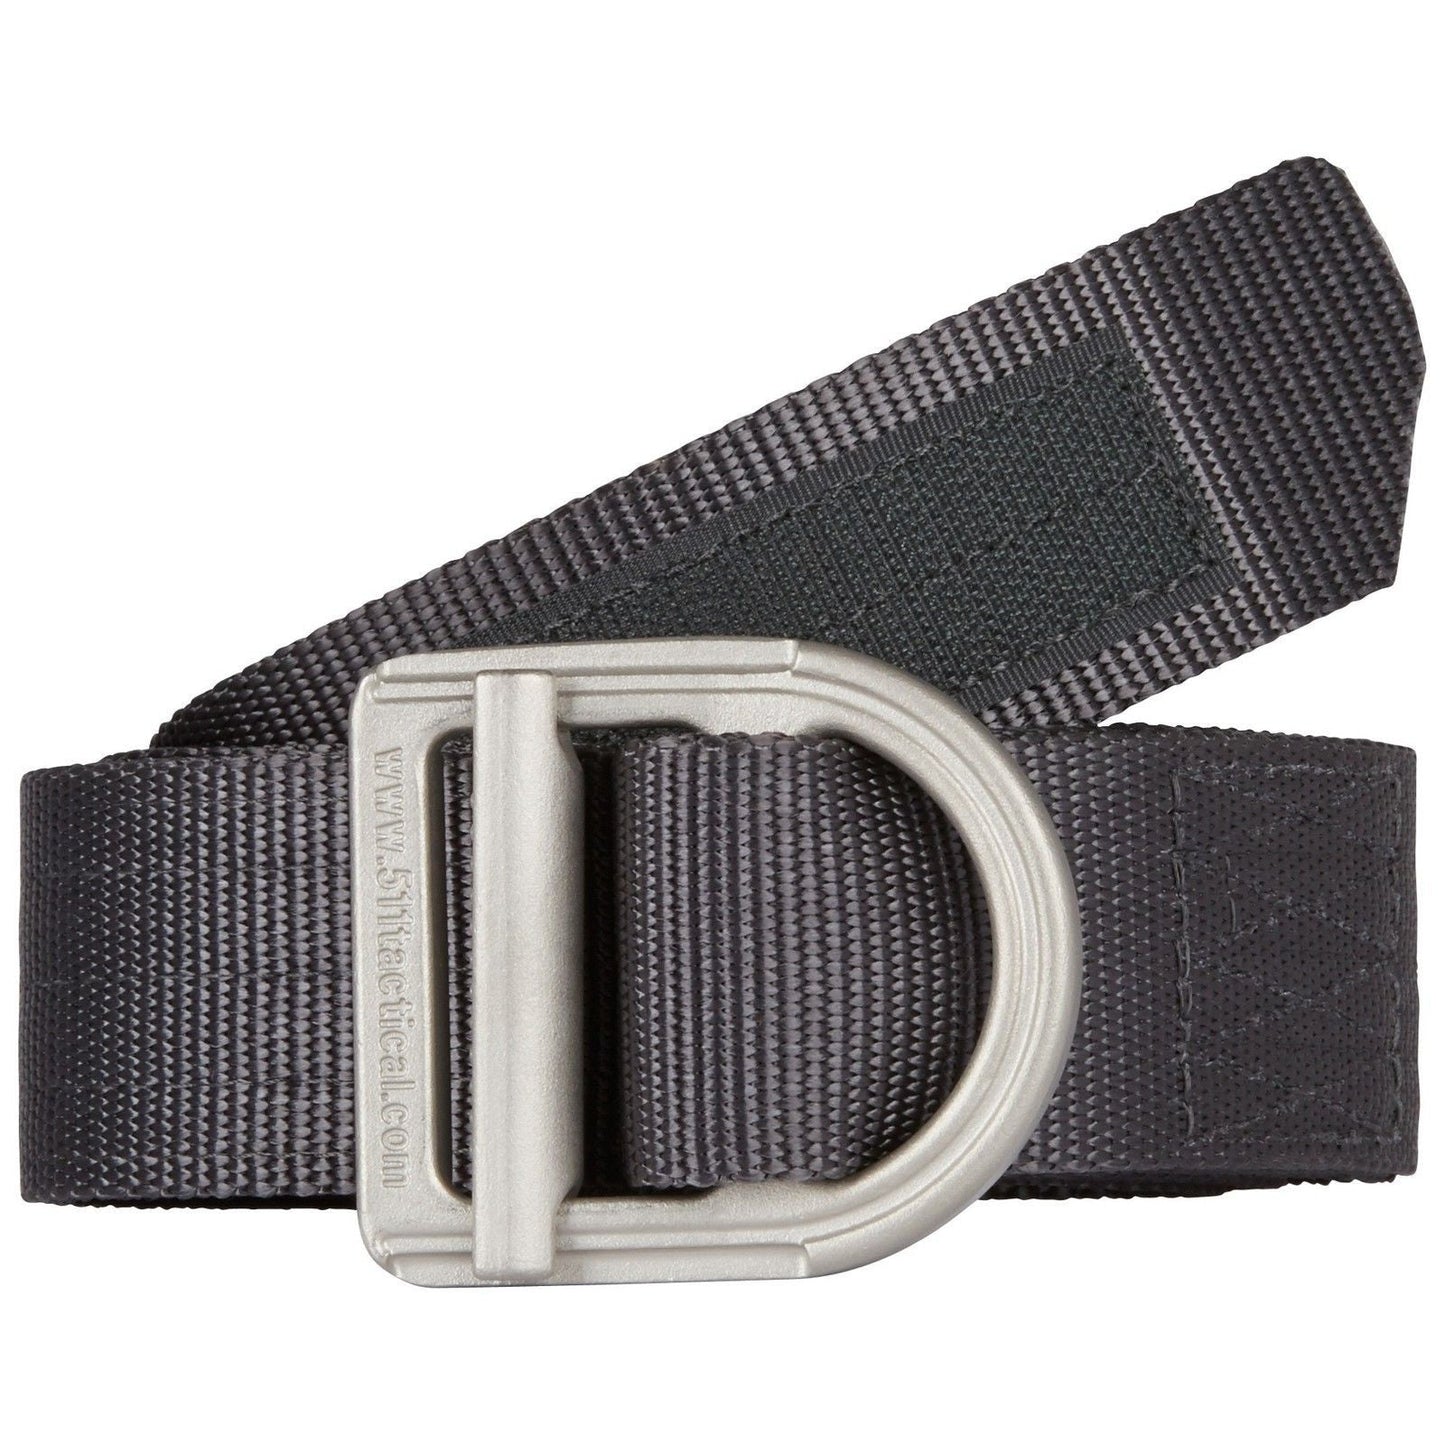 5.11 Tactical 1.5" Wide Law Enforcement Trainer Belt - Police Duty Uniform Belts